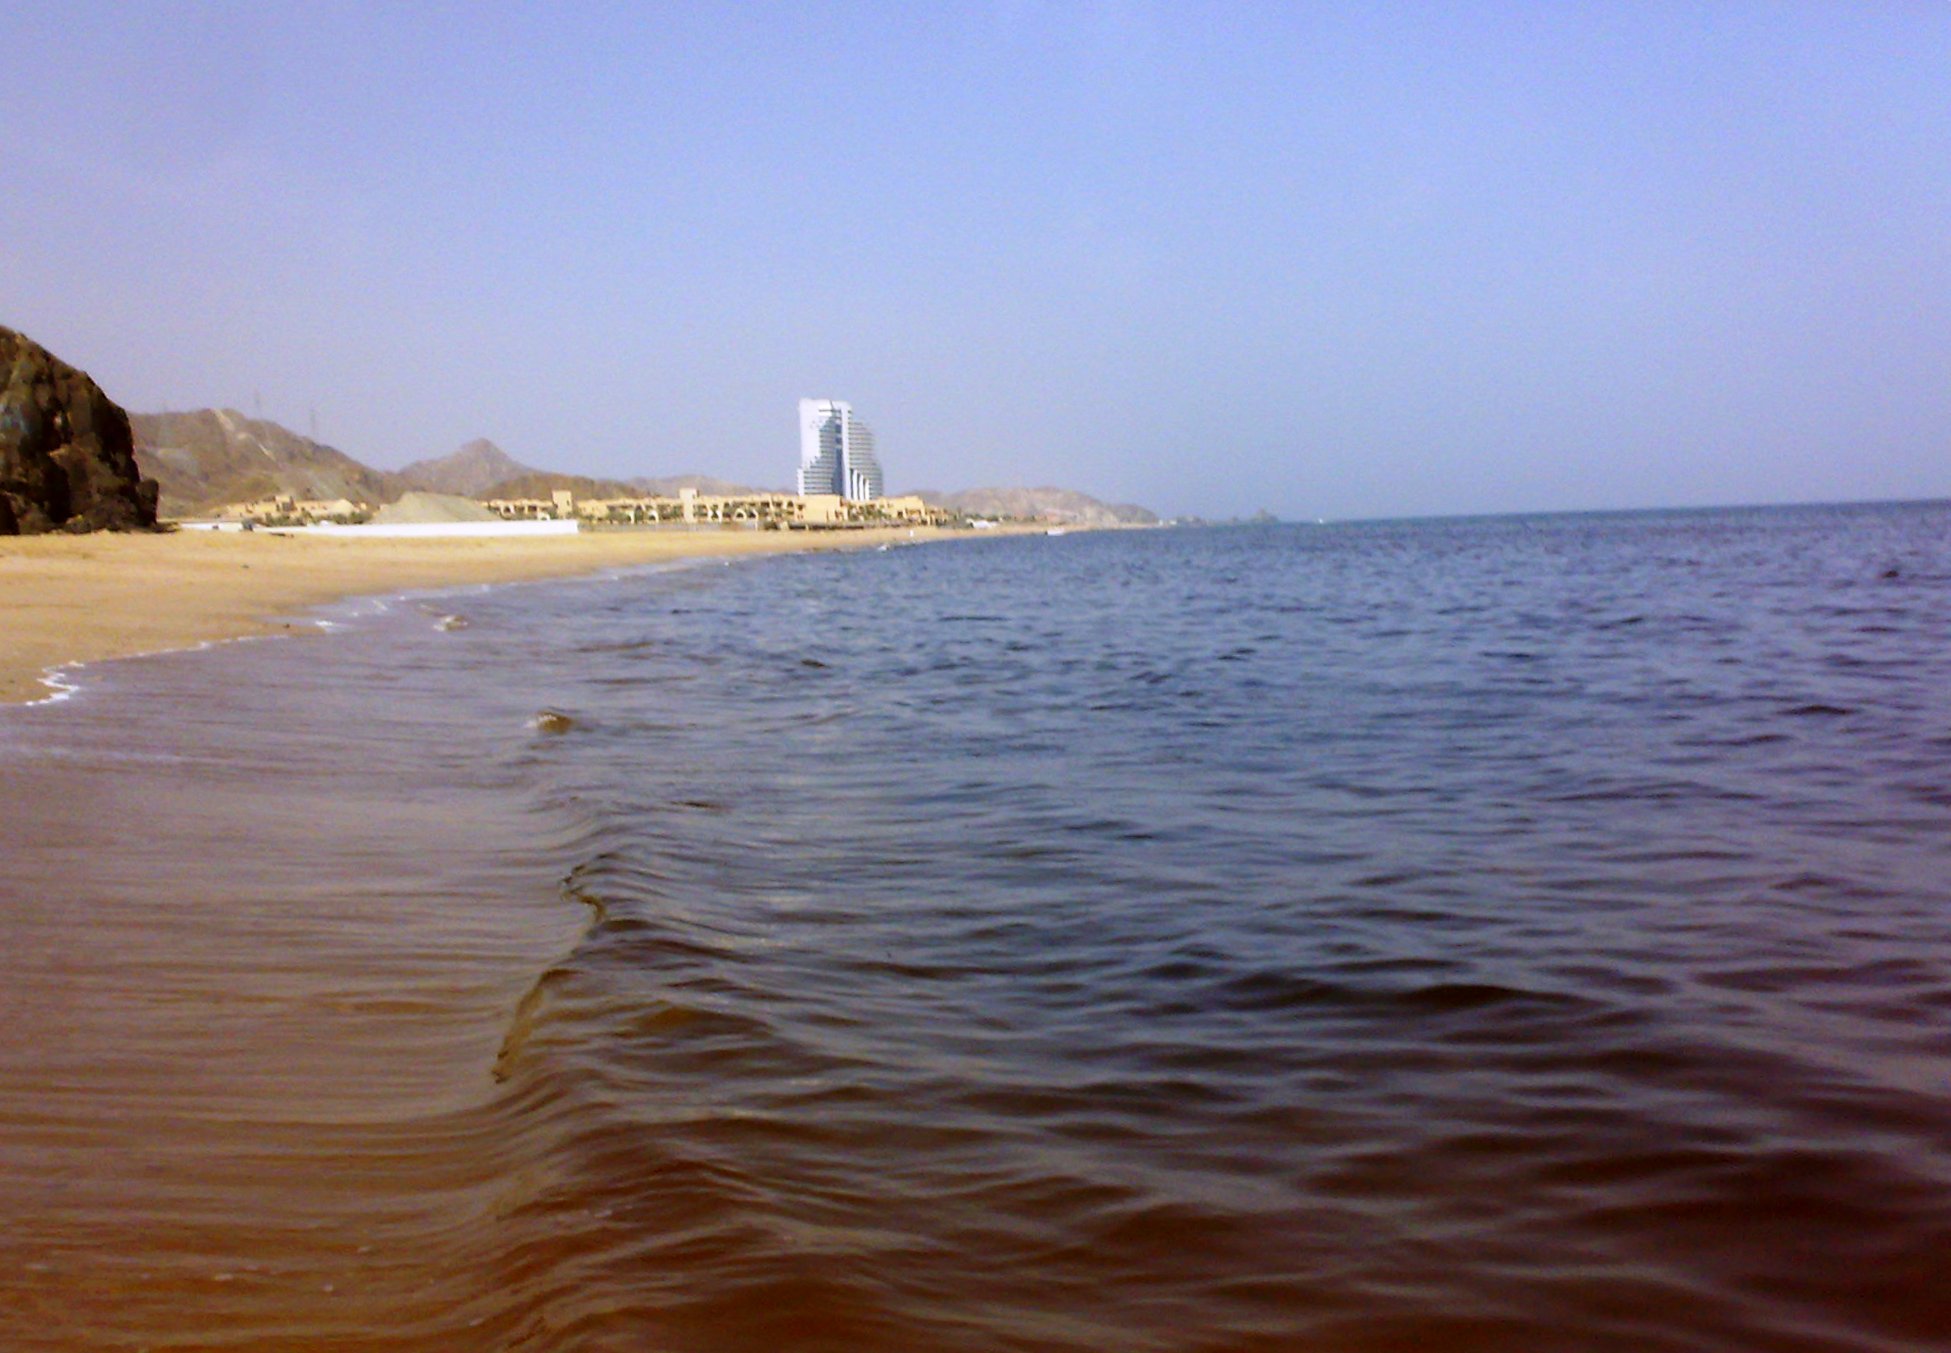 Фуджейра море температура воды. Индийский океан Фуджейра. Акулий остров Фуджейра. Пляж Кальба Фуджейра. Песчаный Скат Фуджейра.